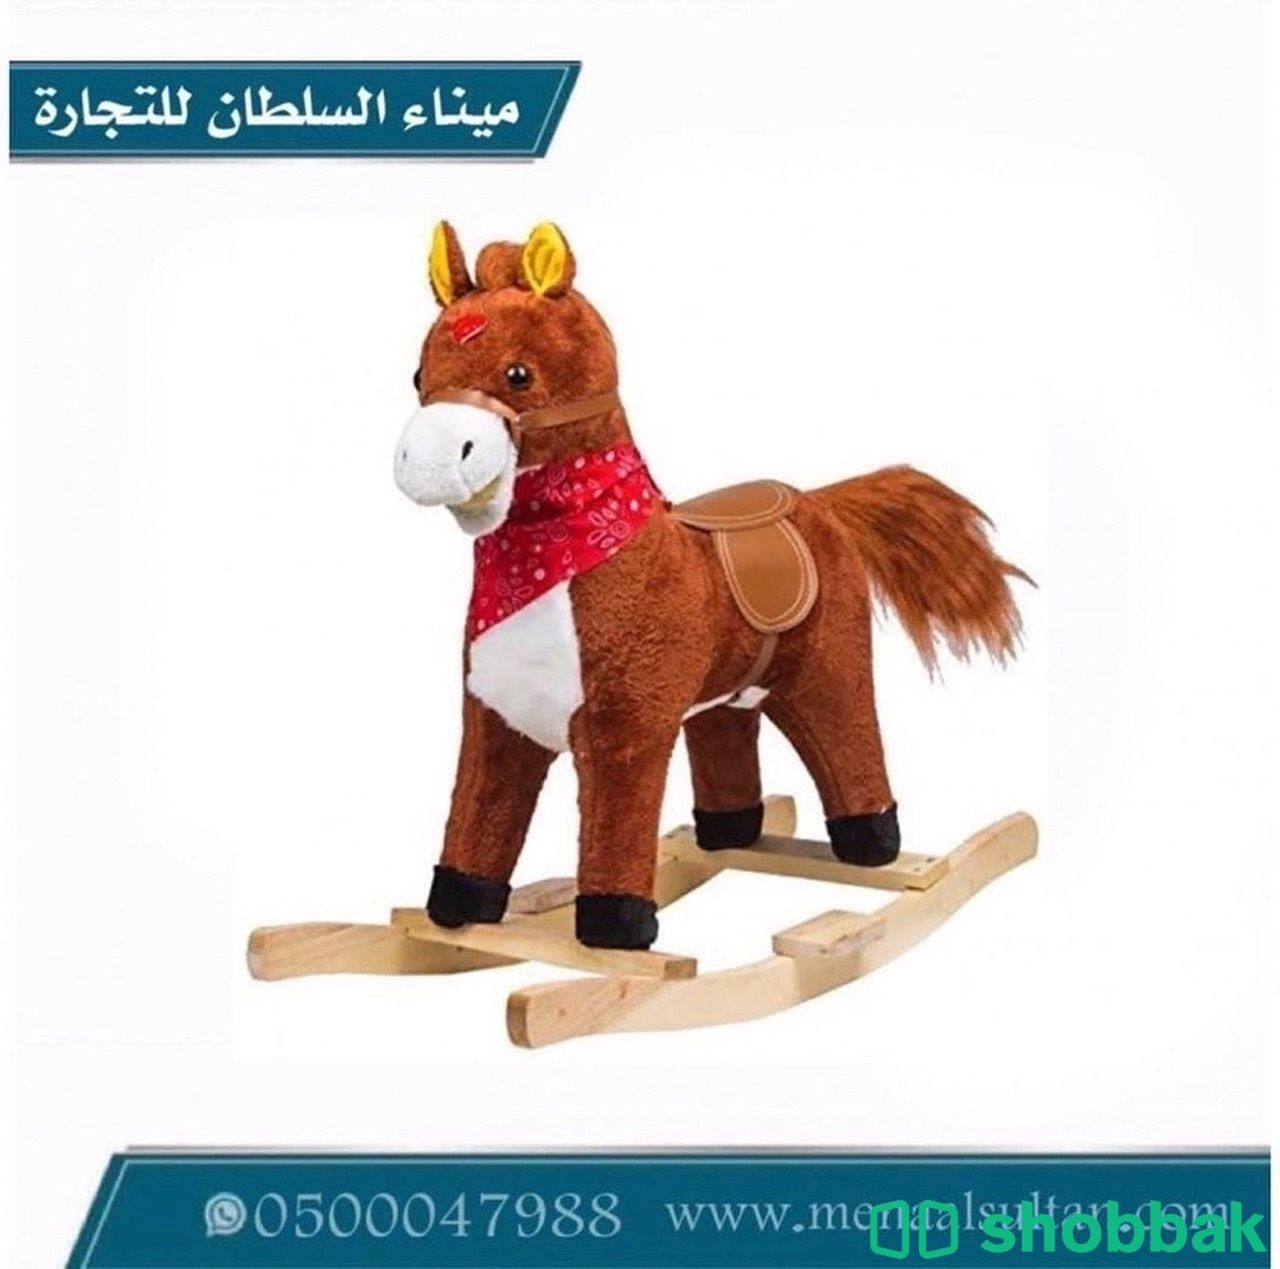 لعبة حصان هزاز مقاس صغير   Shobbak Saudi Arabia